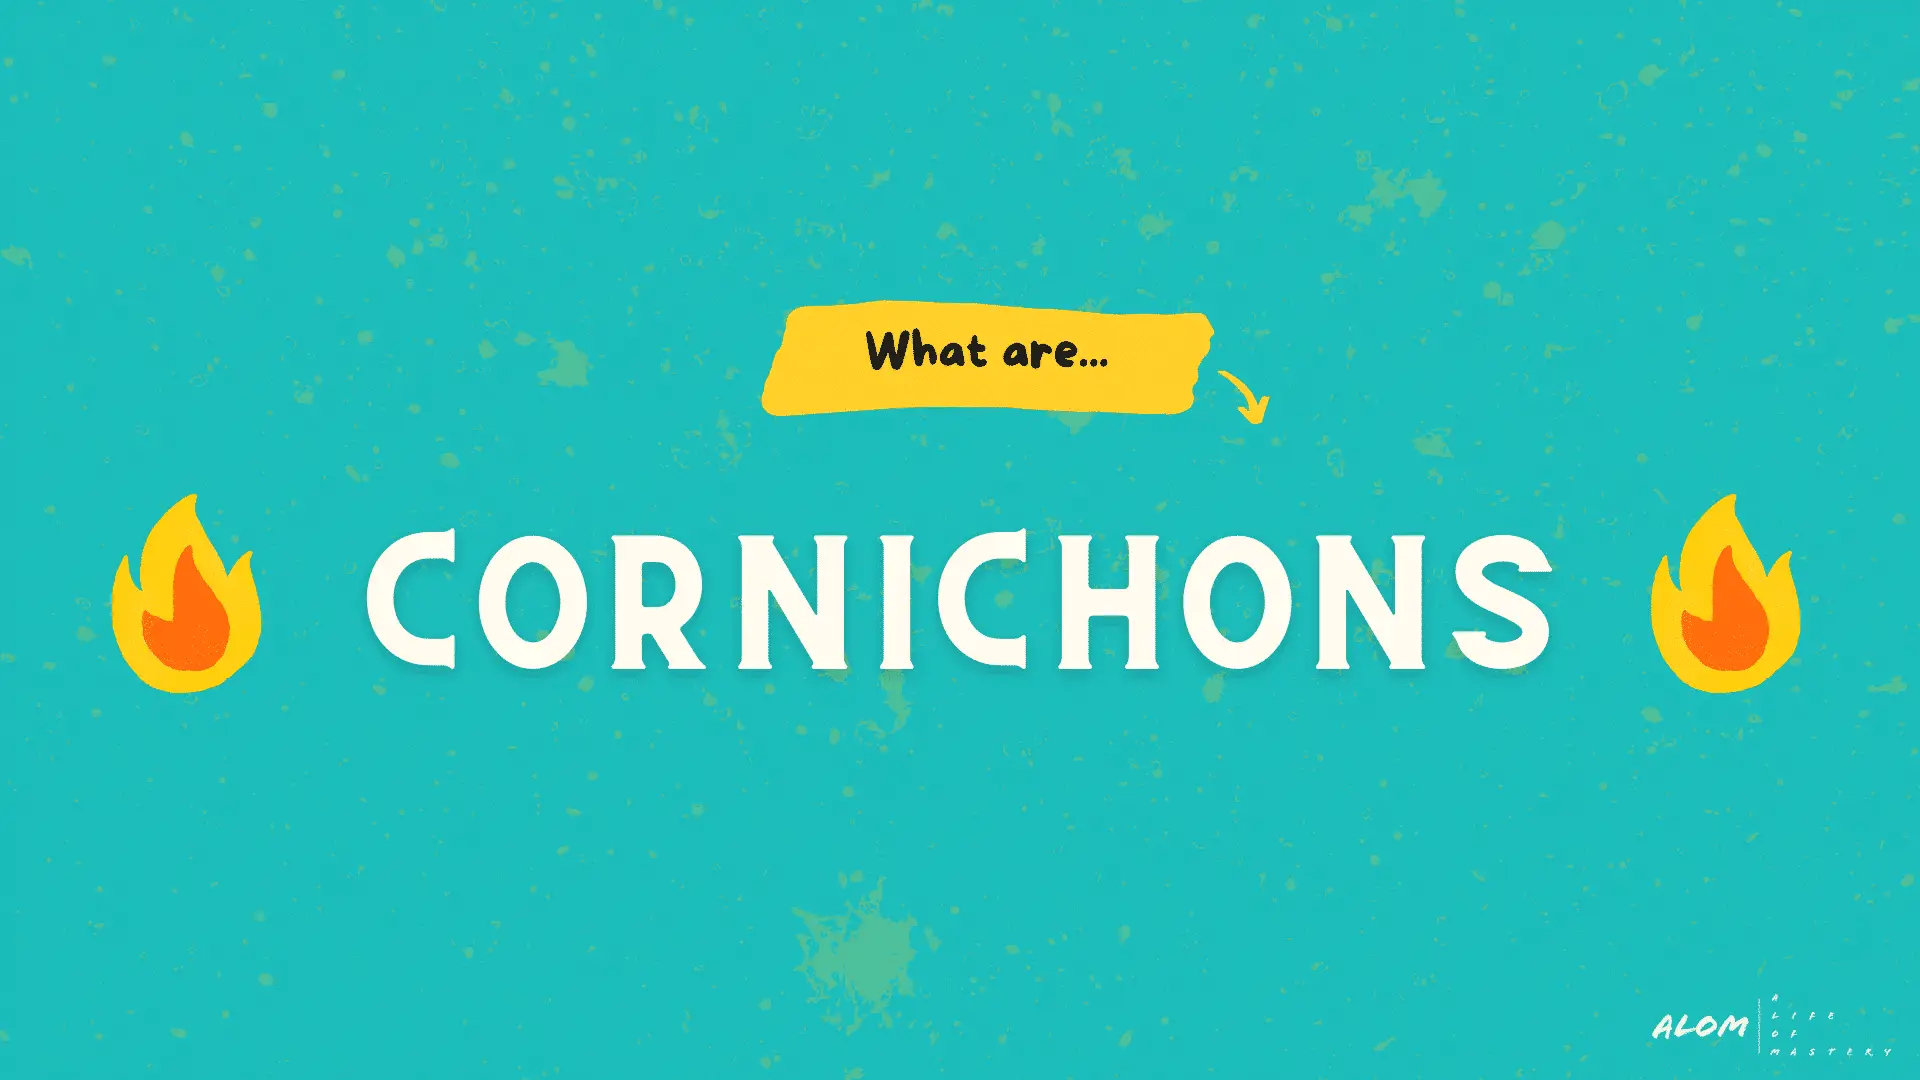 Cornichon Title Graphic